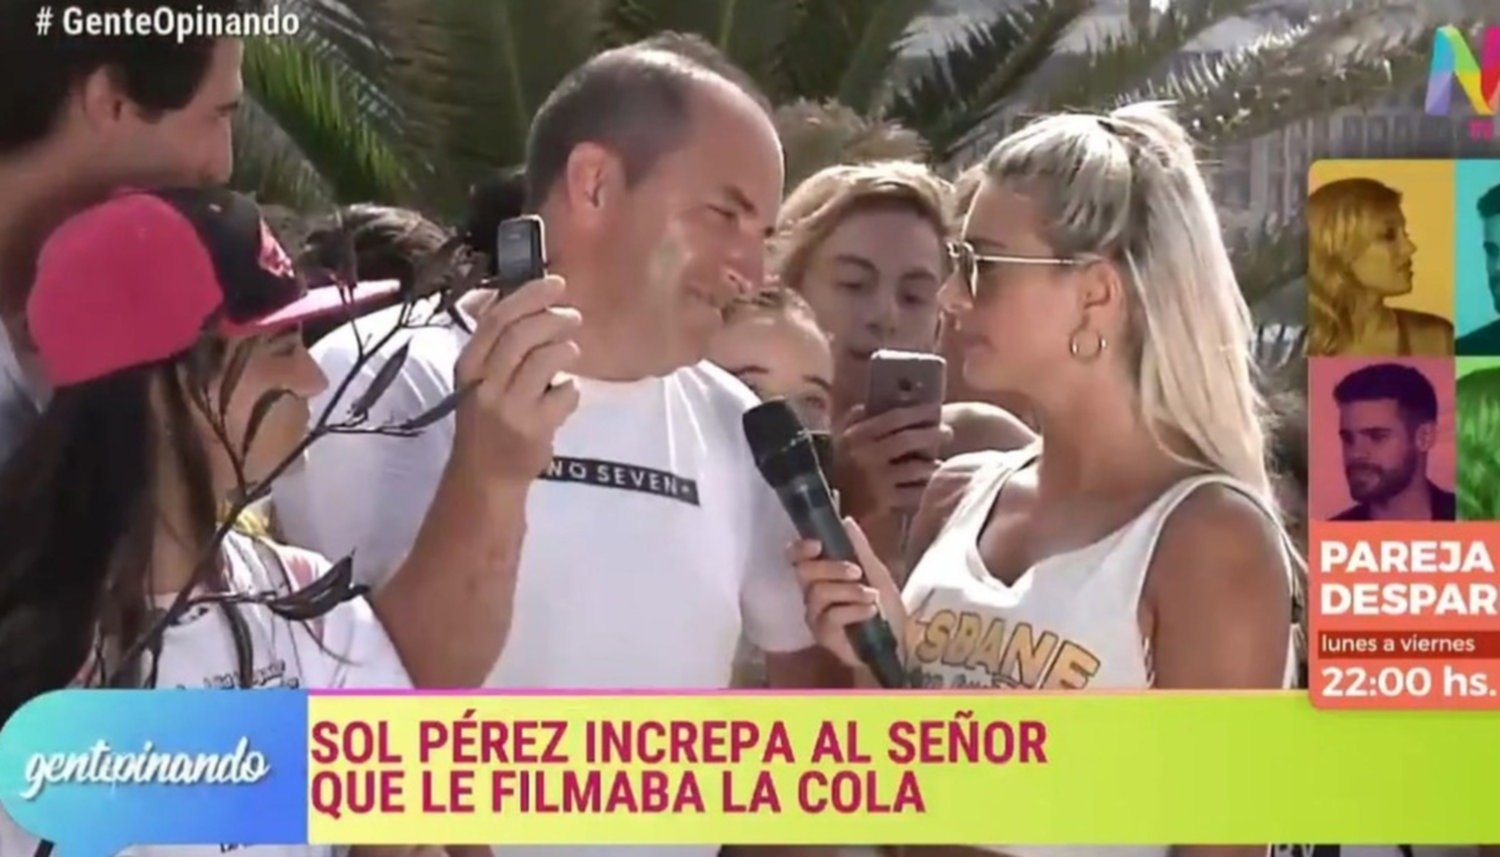 Sol Pérez, la ex chica del clima, increpó a un hombre que estaba filmando la cola